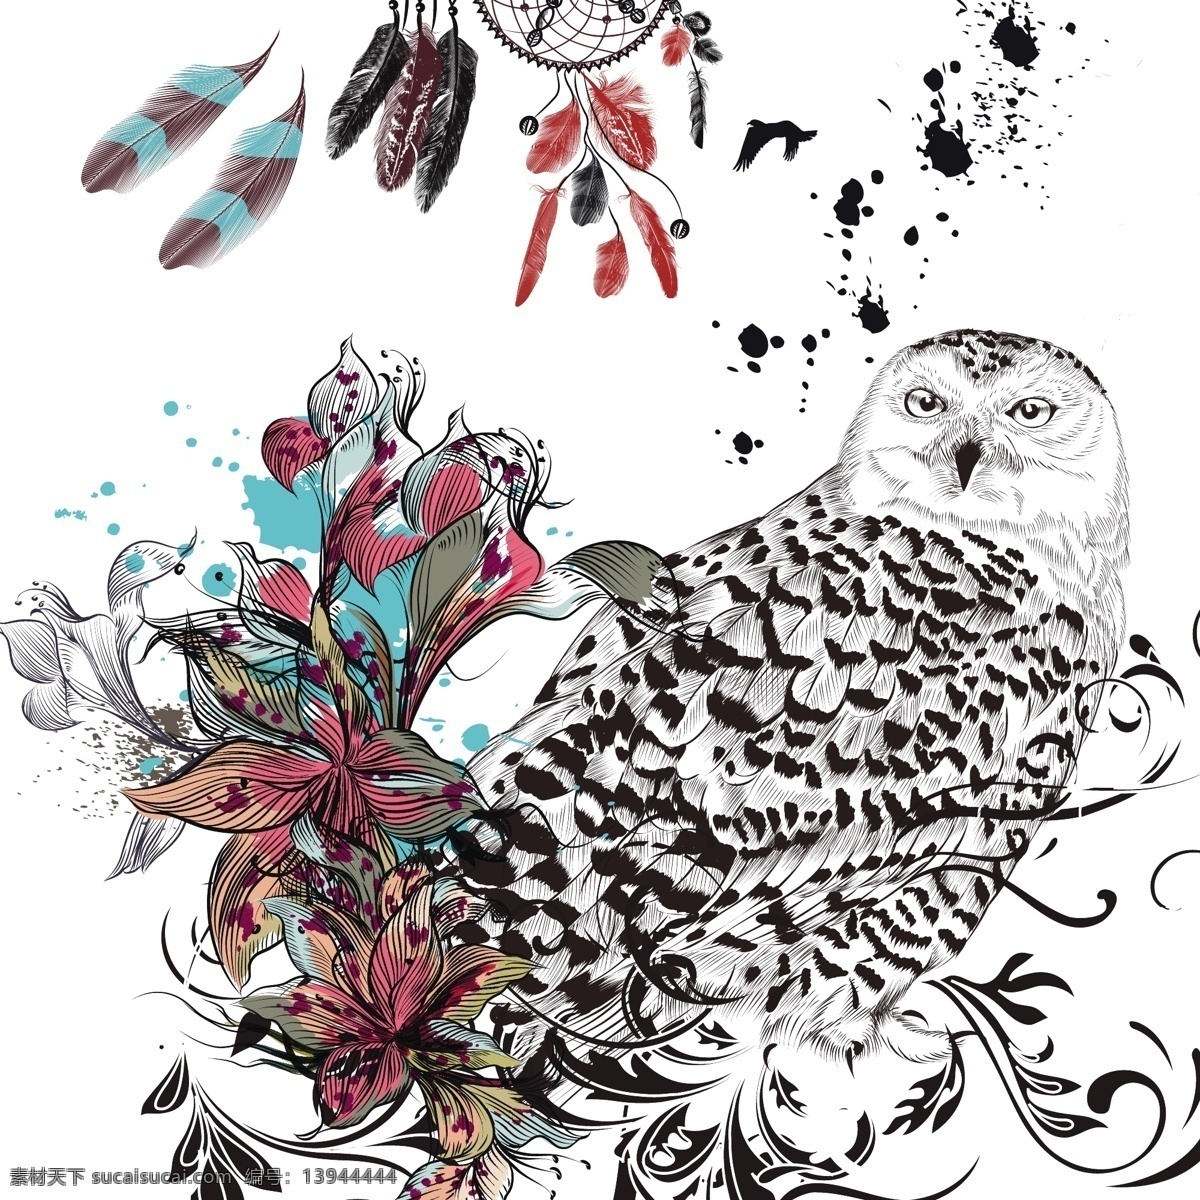 波西 米亚 背景 花卉 抽象的设计 一方面 动物 手绘 饰品 猫头鹰 羽毛 装饰 印度 绘画 民族 波希米亚 花饰 部落 观赏